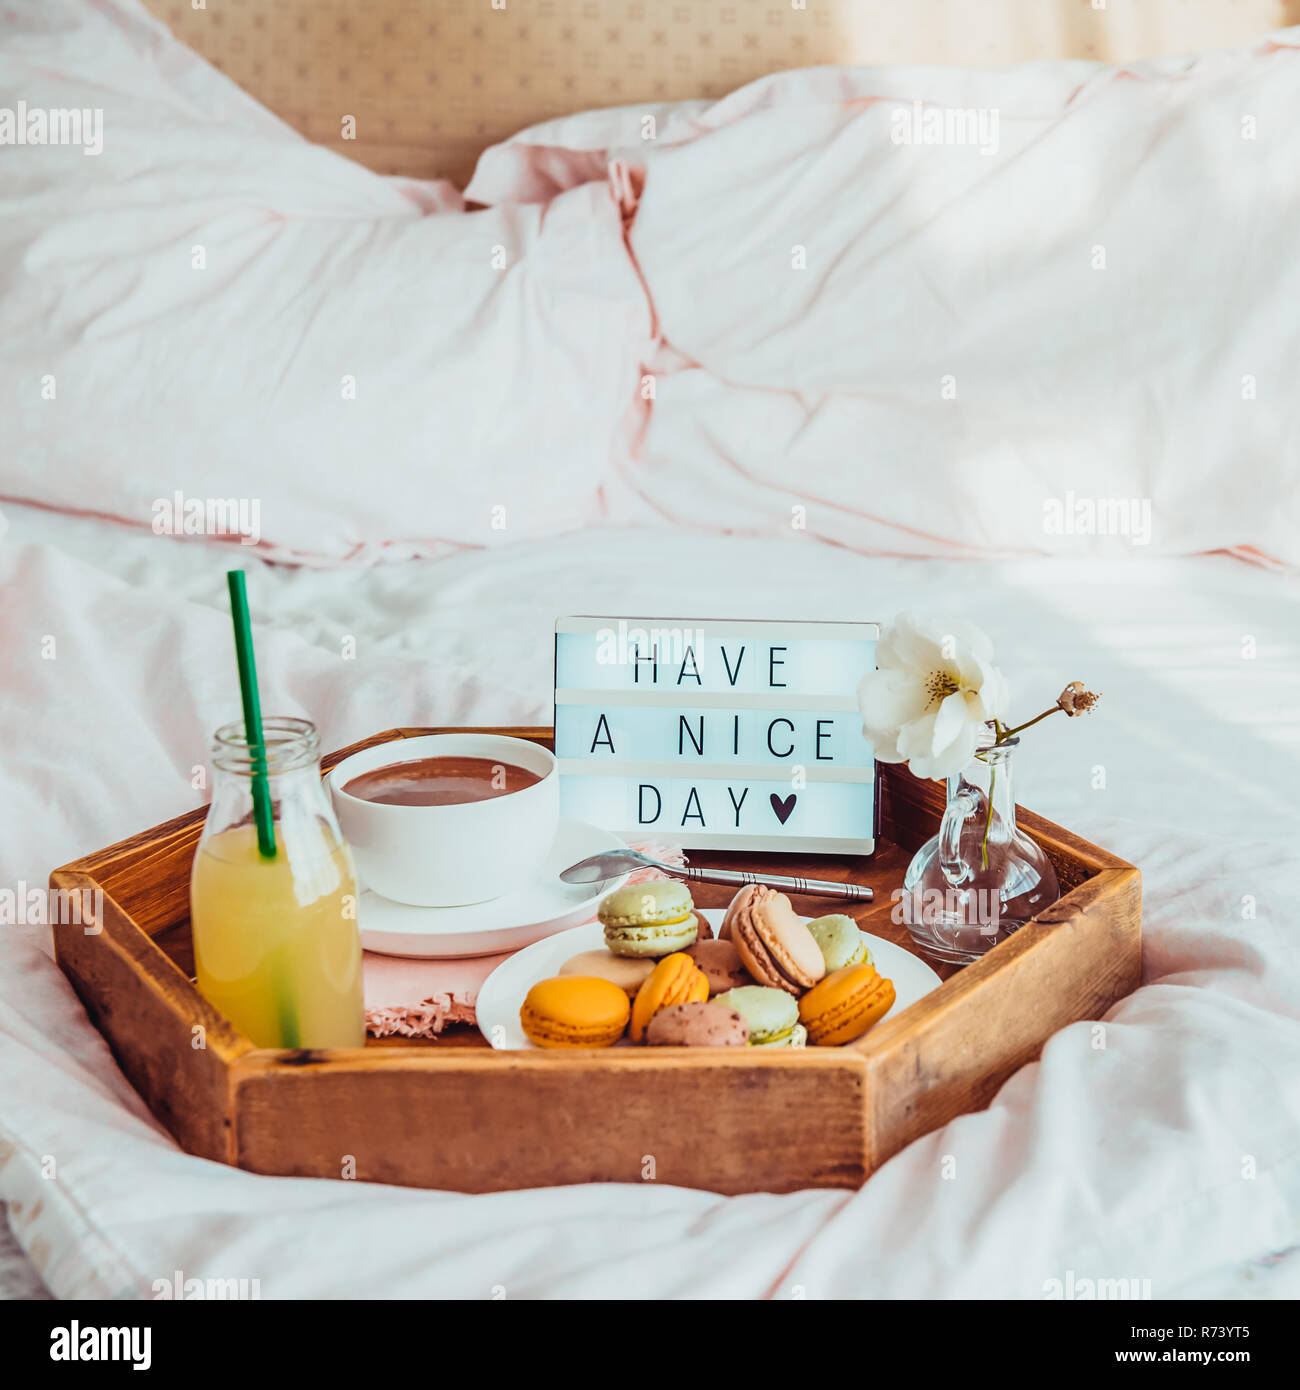 Frühstück im Bett, mit Ihnen einen schönen Tag Text auf beleuchtet. Tasse  Kaffee, Saft, Makronen, Blumen in Vase auf Holz- fach Guten morgen  Stimmung. Krankenhaus Stockfotografie - Alamy